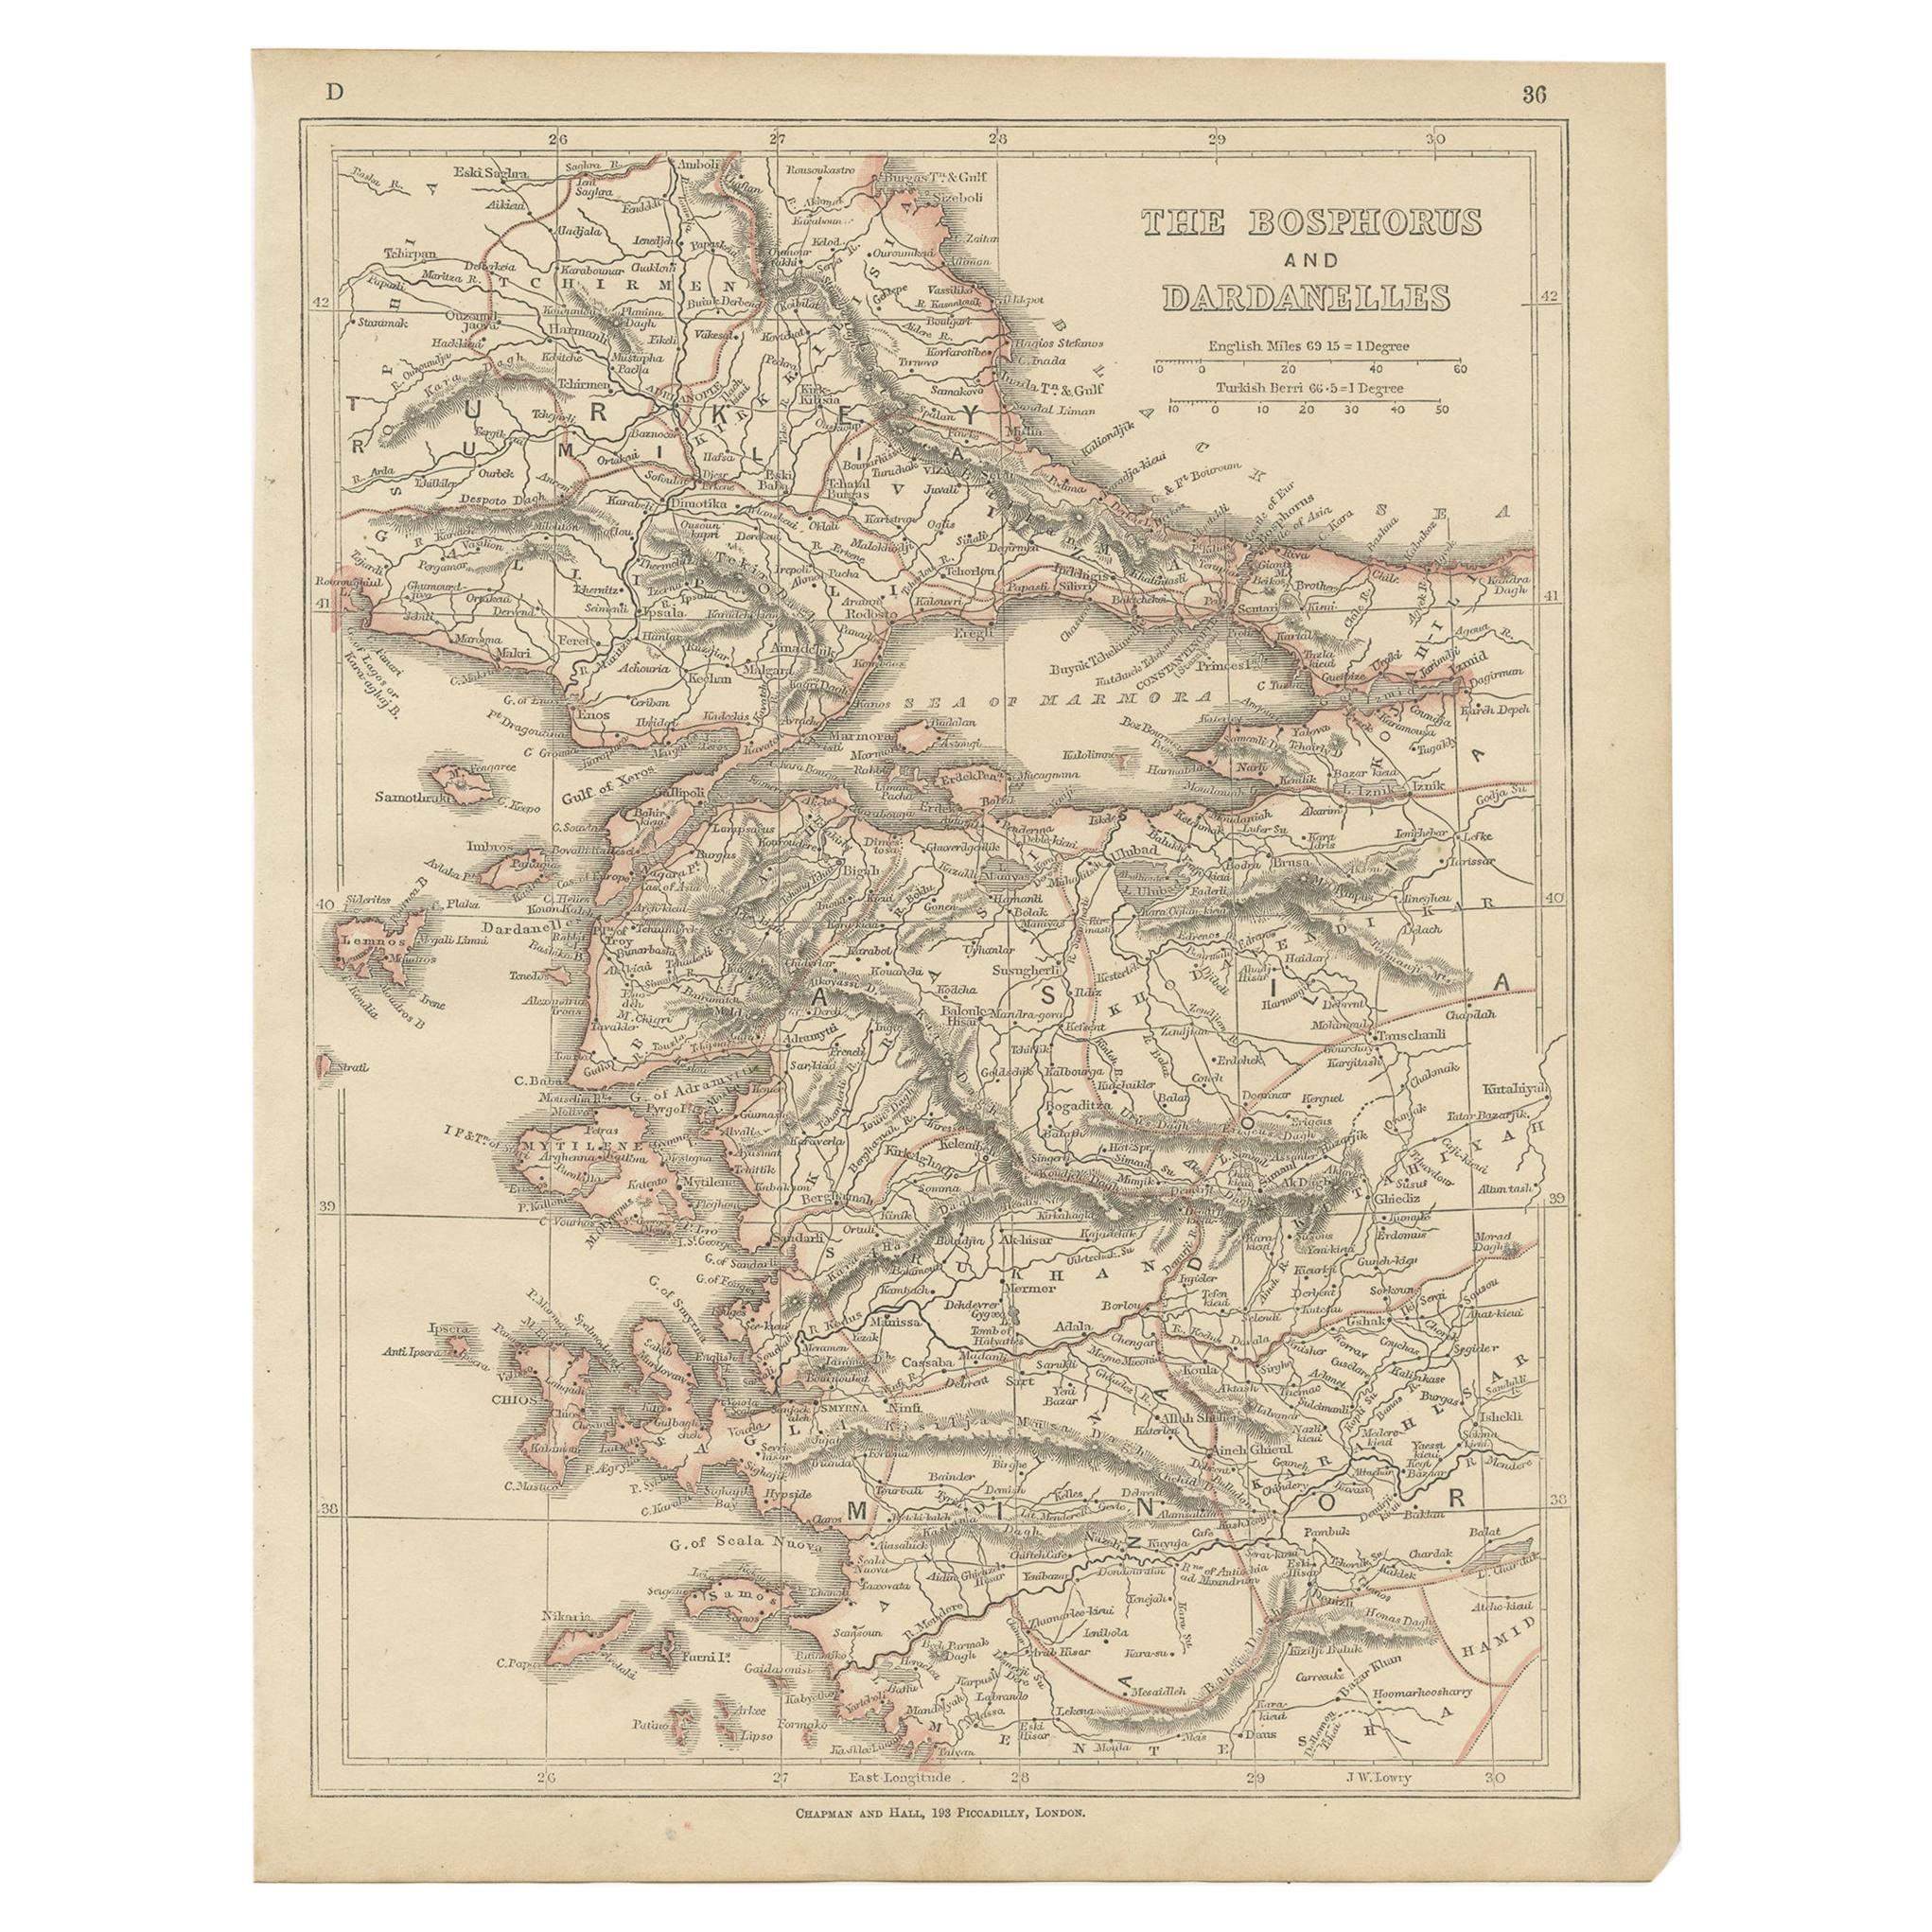 Antike Karte der Bosporus- und Dardanelles, 1852